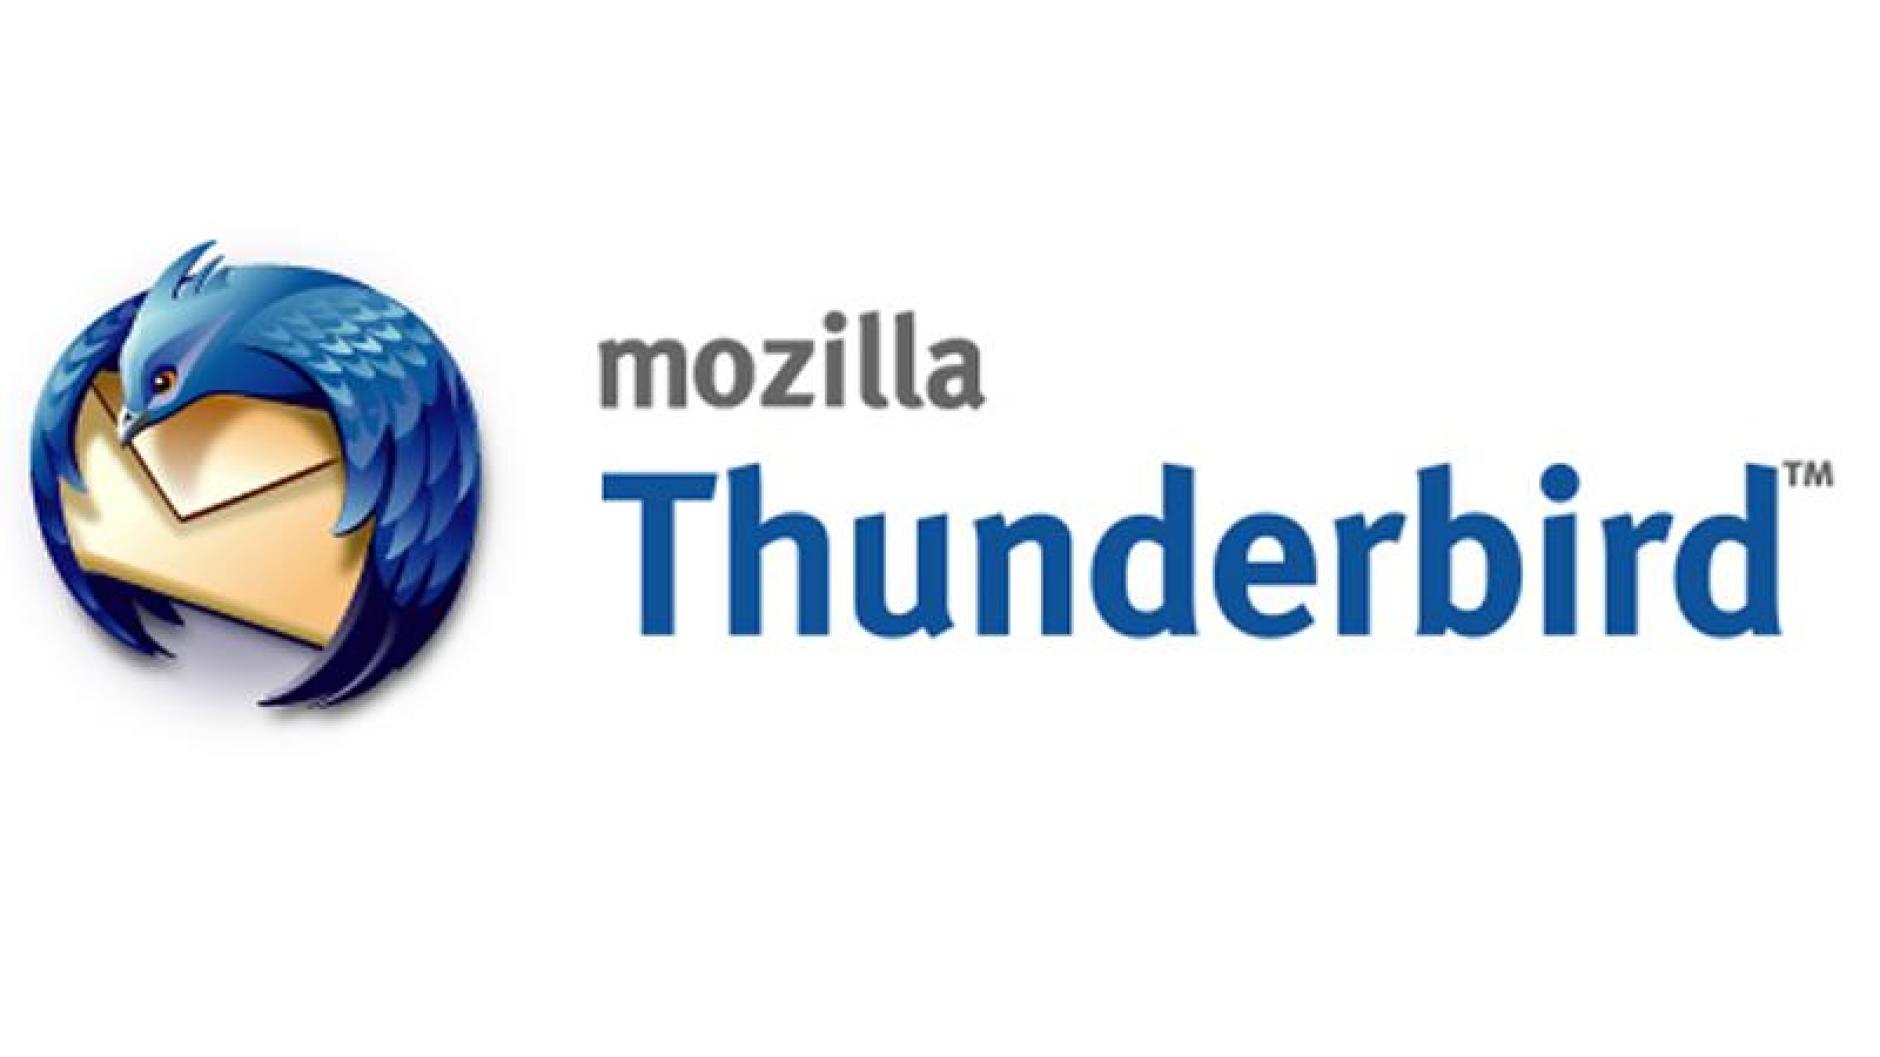 mozilla thunderbird signatur mit logo